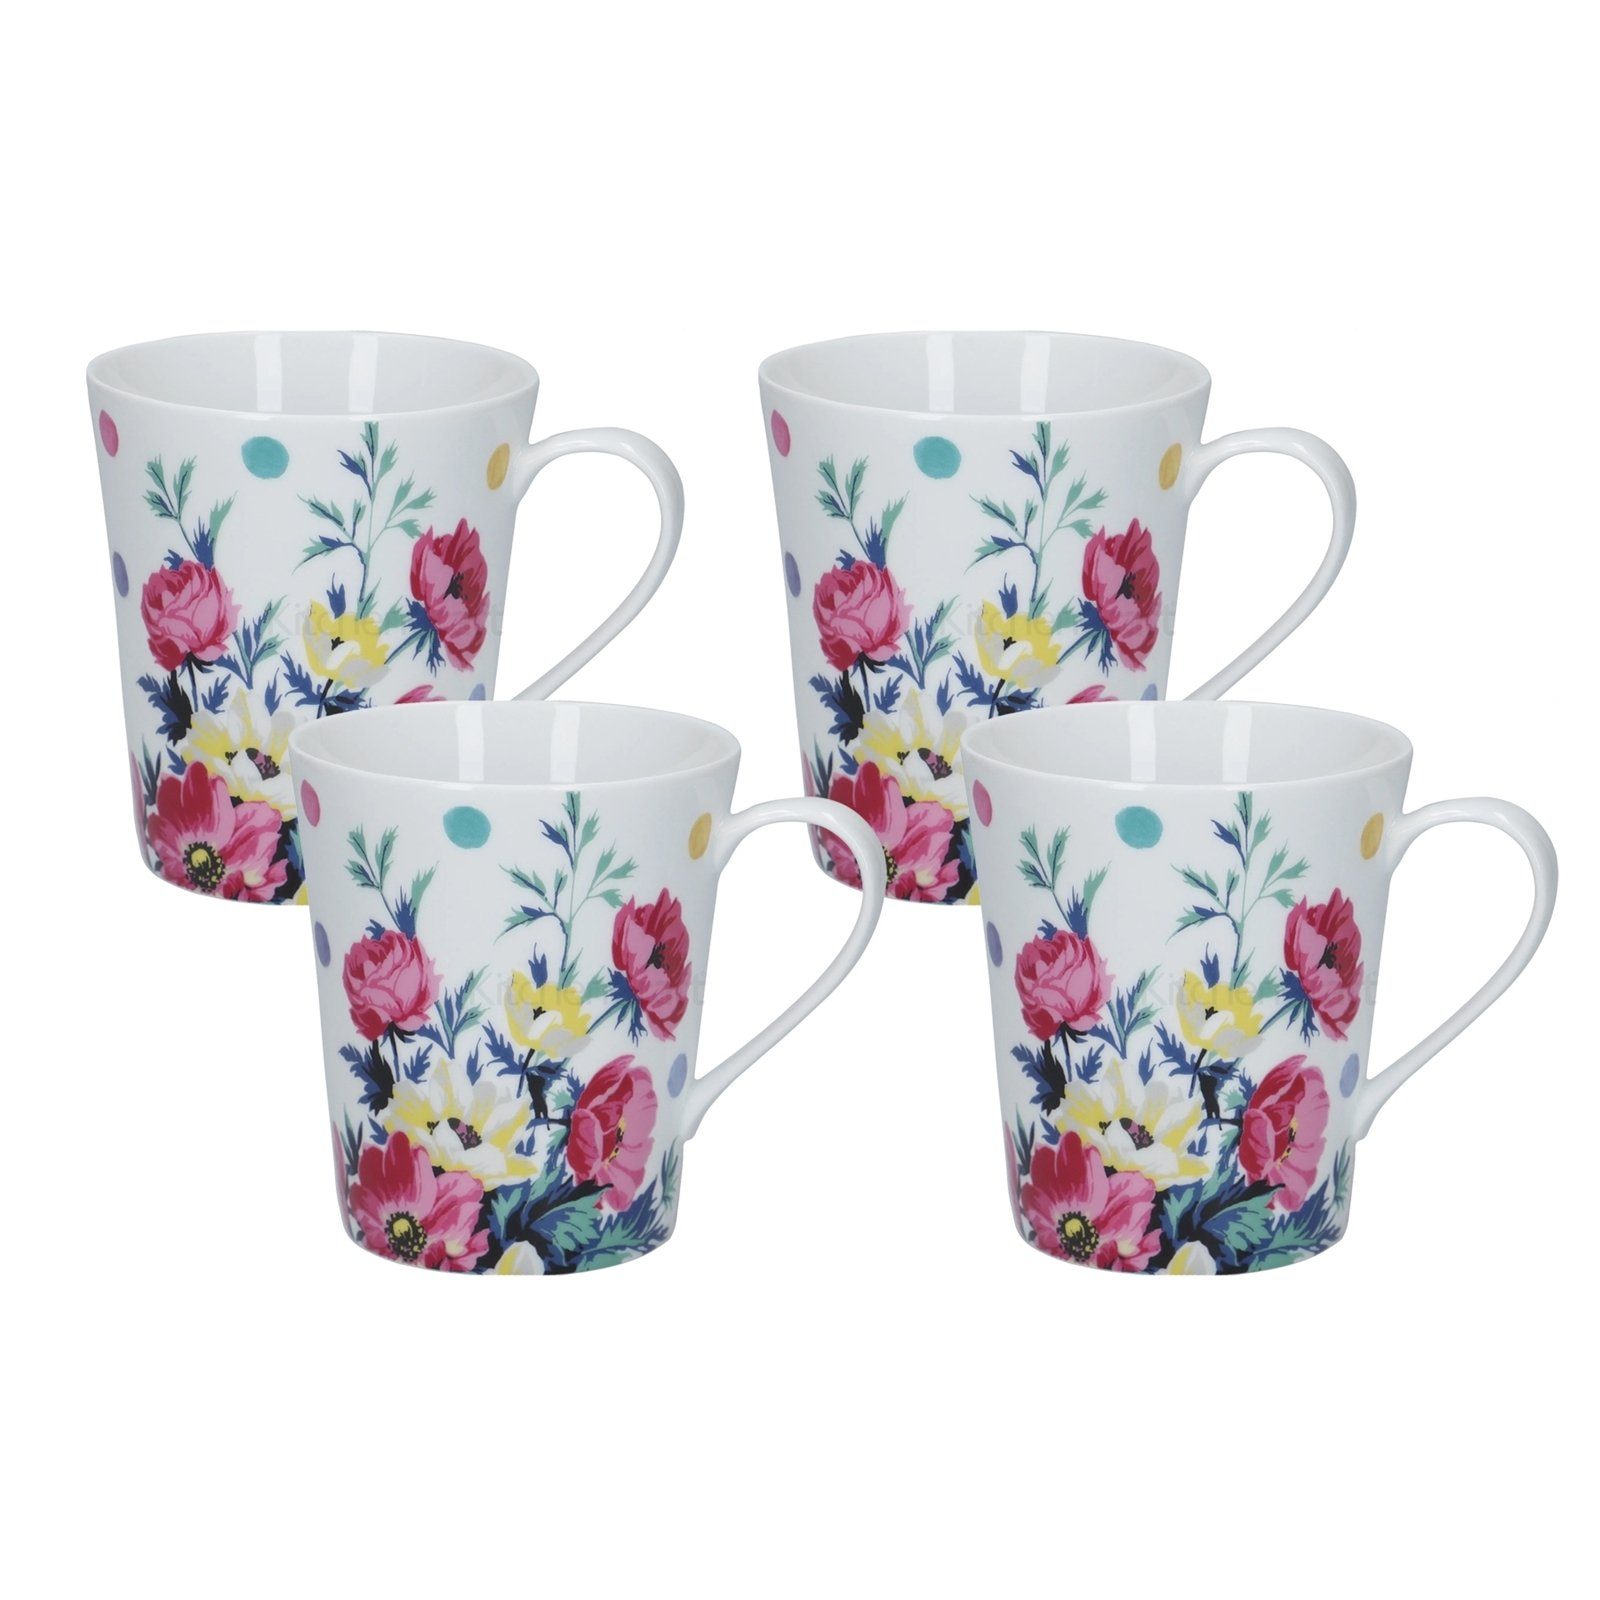 Neuetischkultur Tasse Kaffeetasse Porzellan Blumendekor Kaffeebecher Blume Porzellan, Weiß Bunt 4er-Set Mikasa